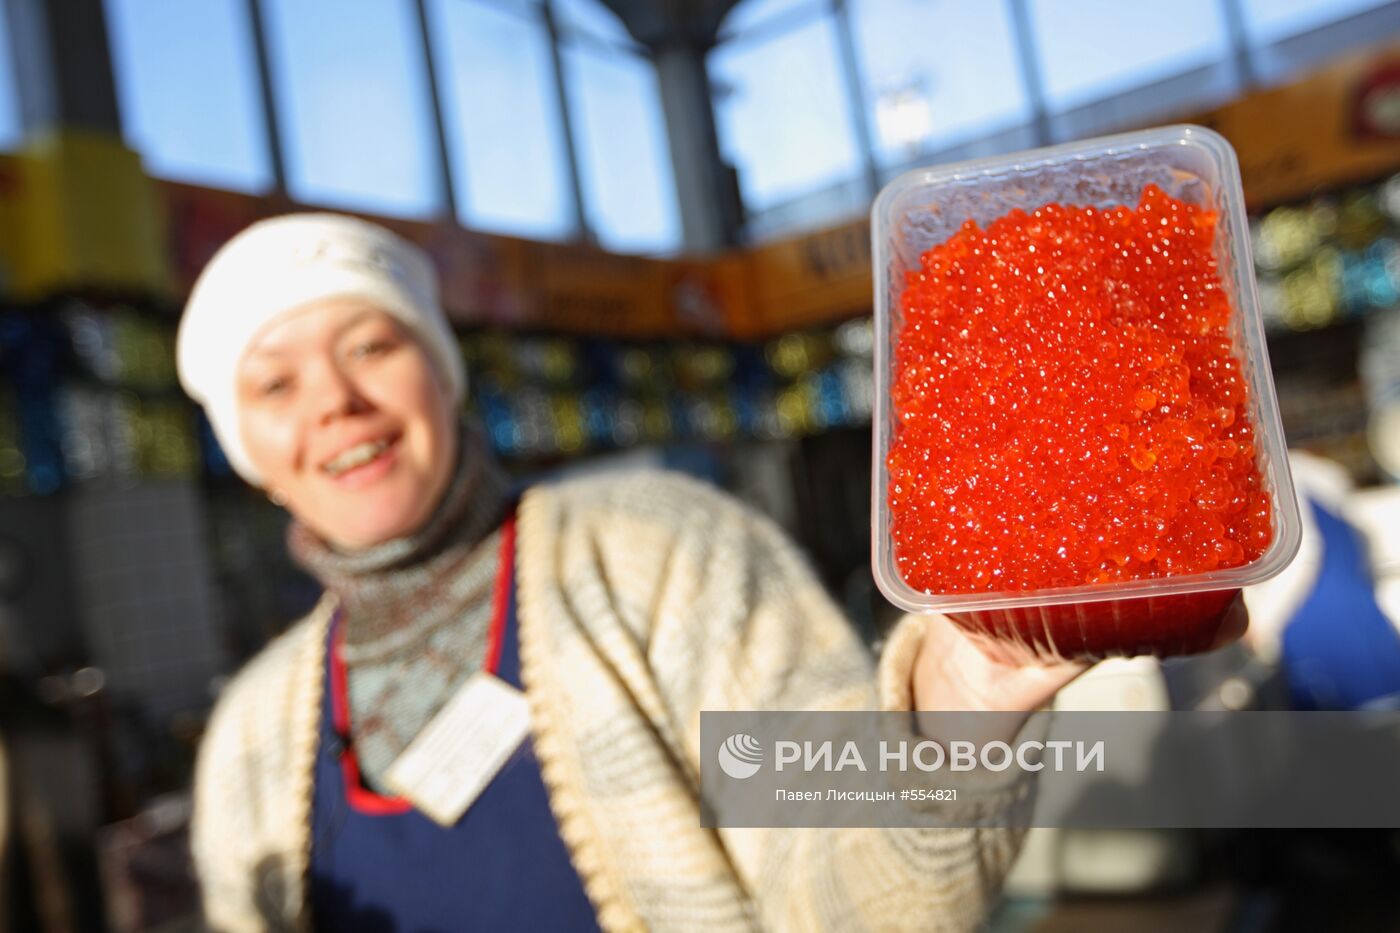 Работа Шарташского рынка в Екатеринбурге